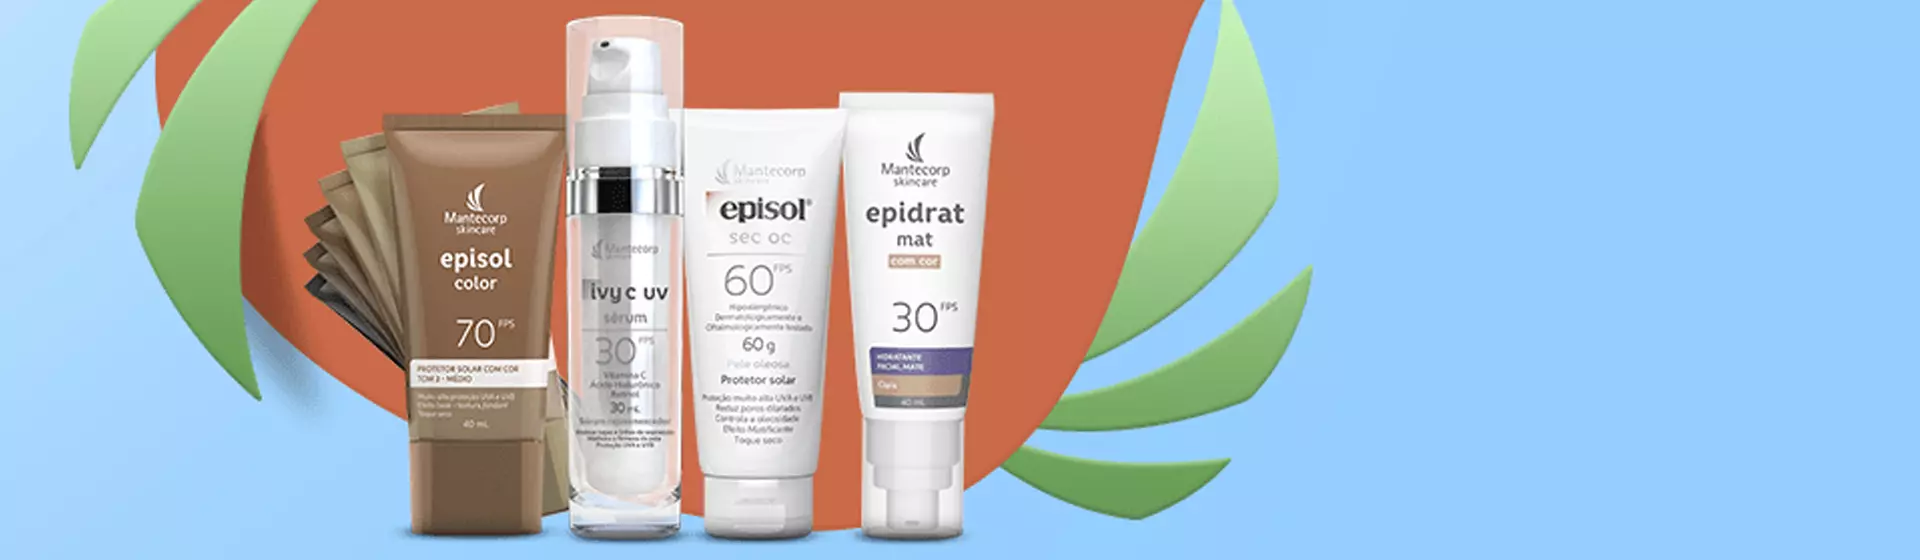 Capa do post: Protetor solar Episol: 6 opções mais indicadas da marca para proteger a pele